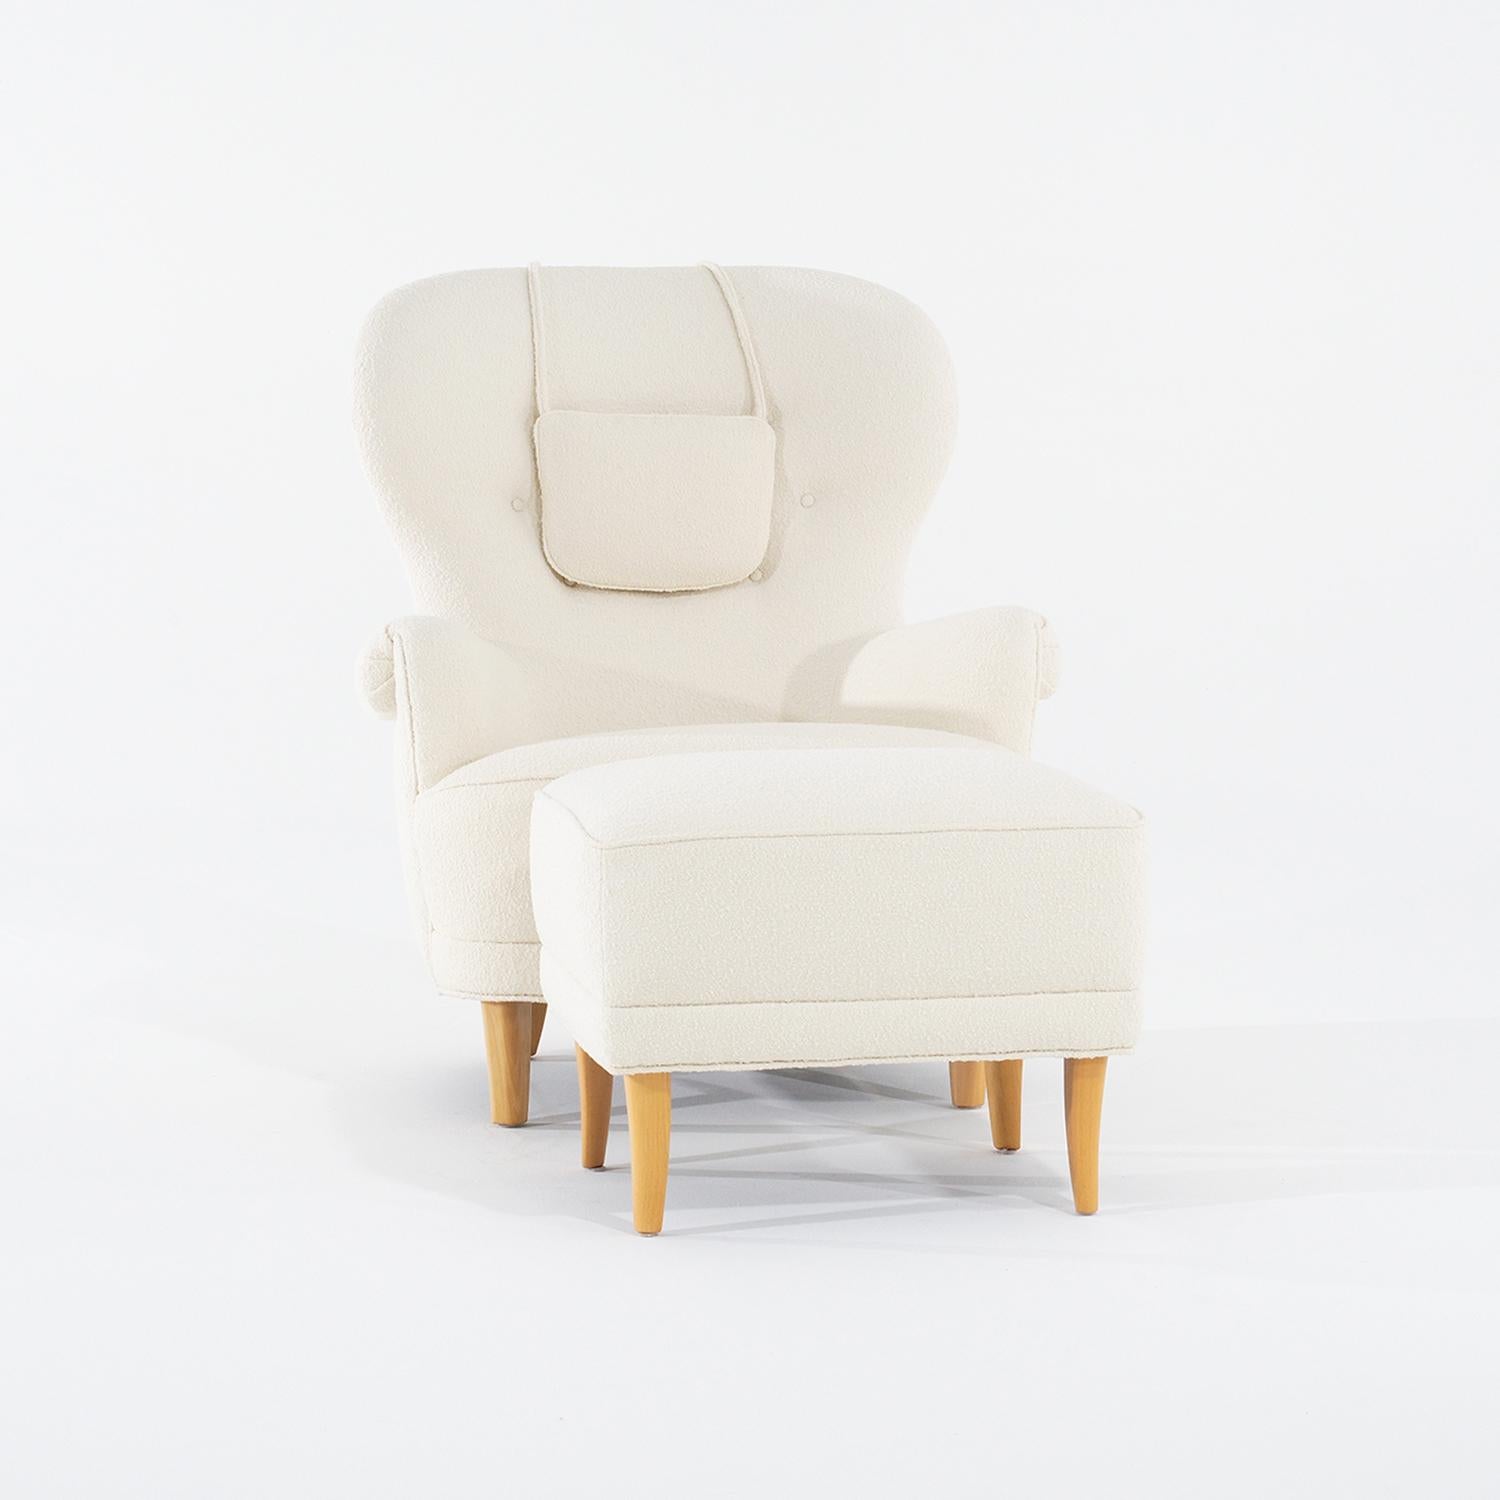 Ein schwedisches Set aus einem Sessel und einem Hocker, entworfen von Carl Malmsten und hergestellt von O.H. Sjögren in gutem Zustand. Der große skandinavische Lesesessel hat eine Kopfstütze, eine leicht geschwungene Rückenlehne mit ausgebreiteten